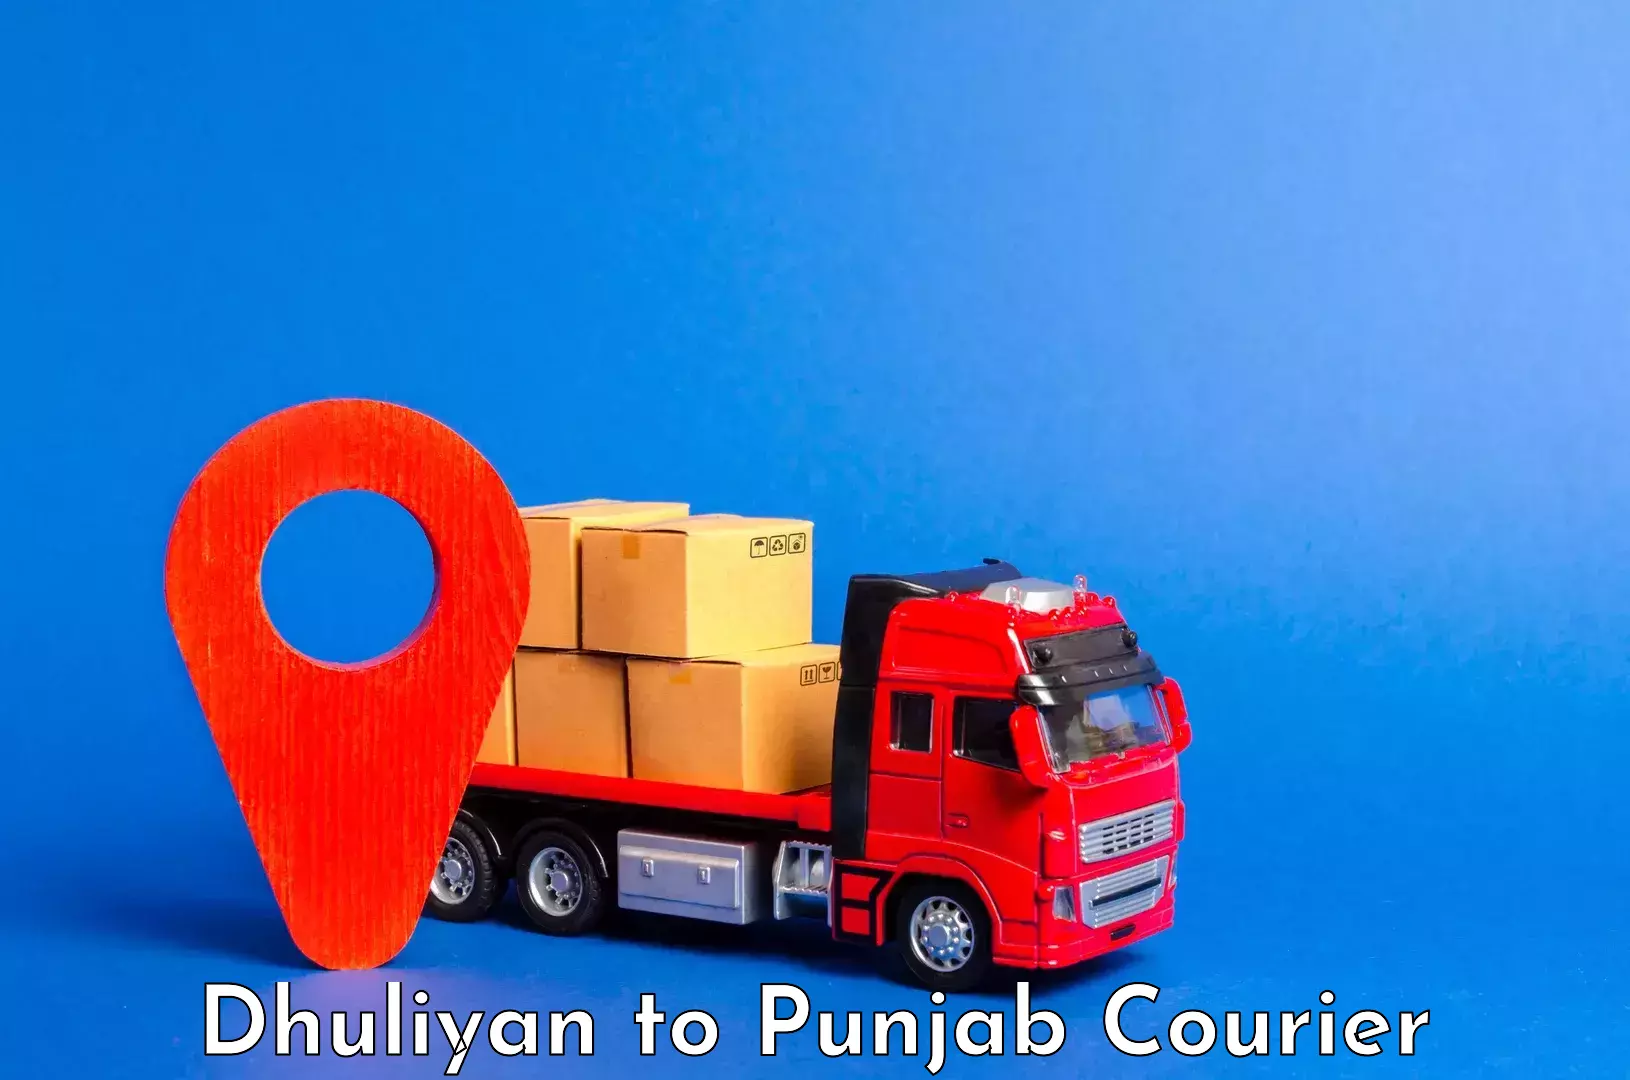 Luggage transit service Dhuliyan to Punjab